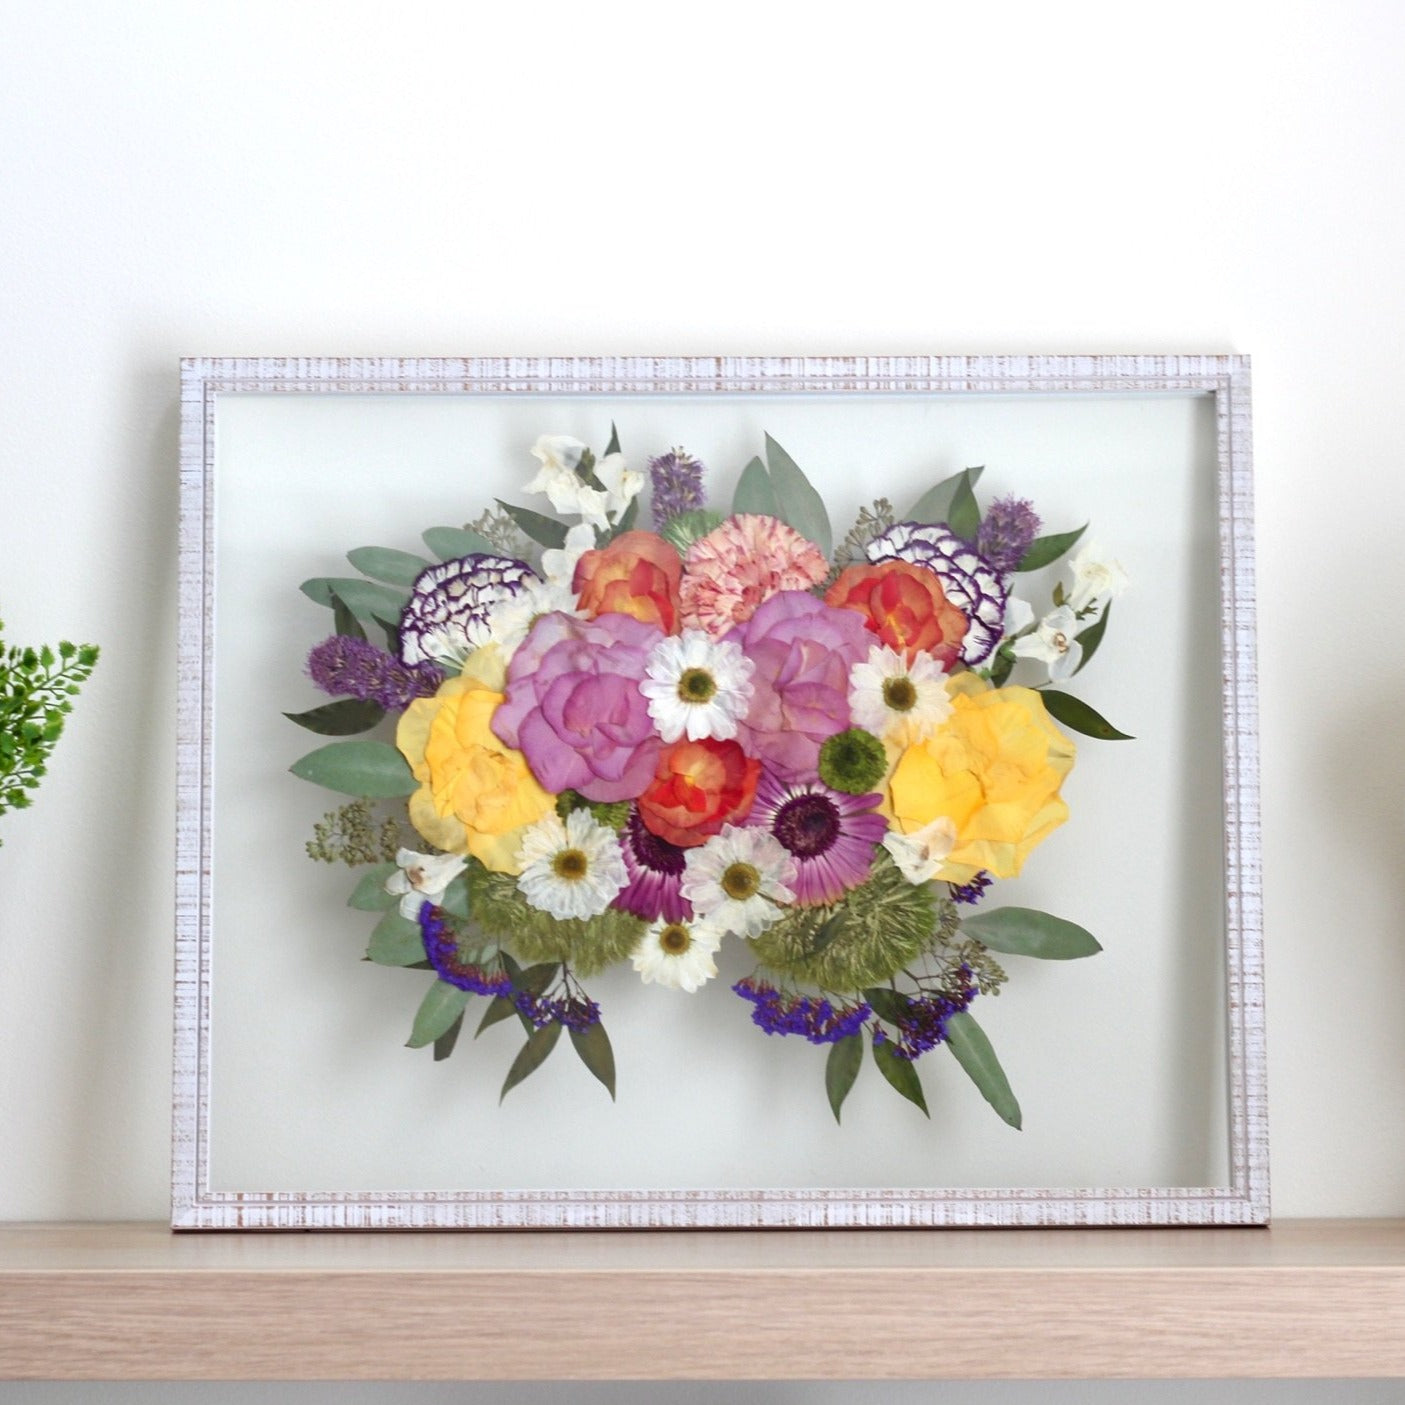 Custom Framed Pressed Flowers